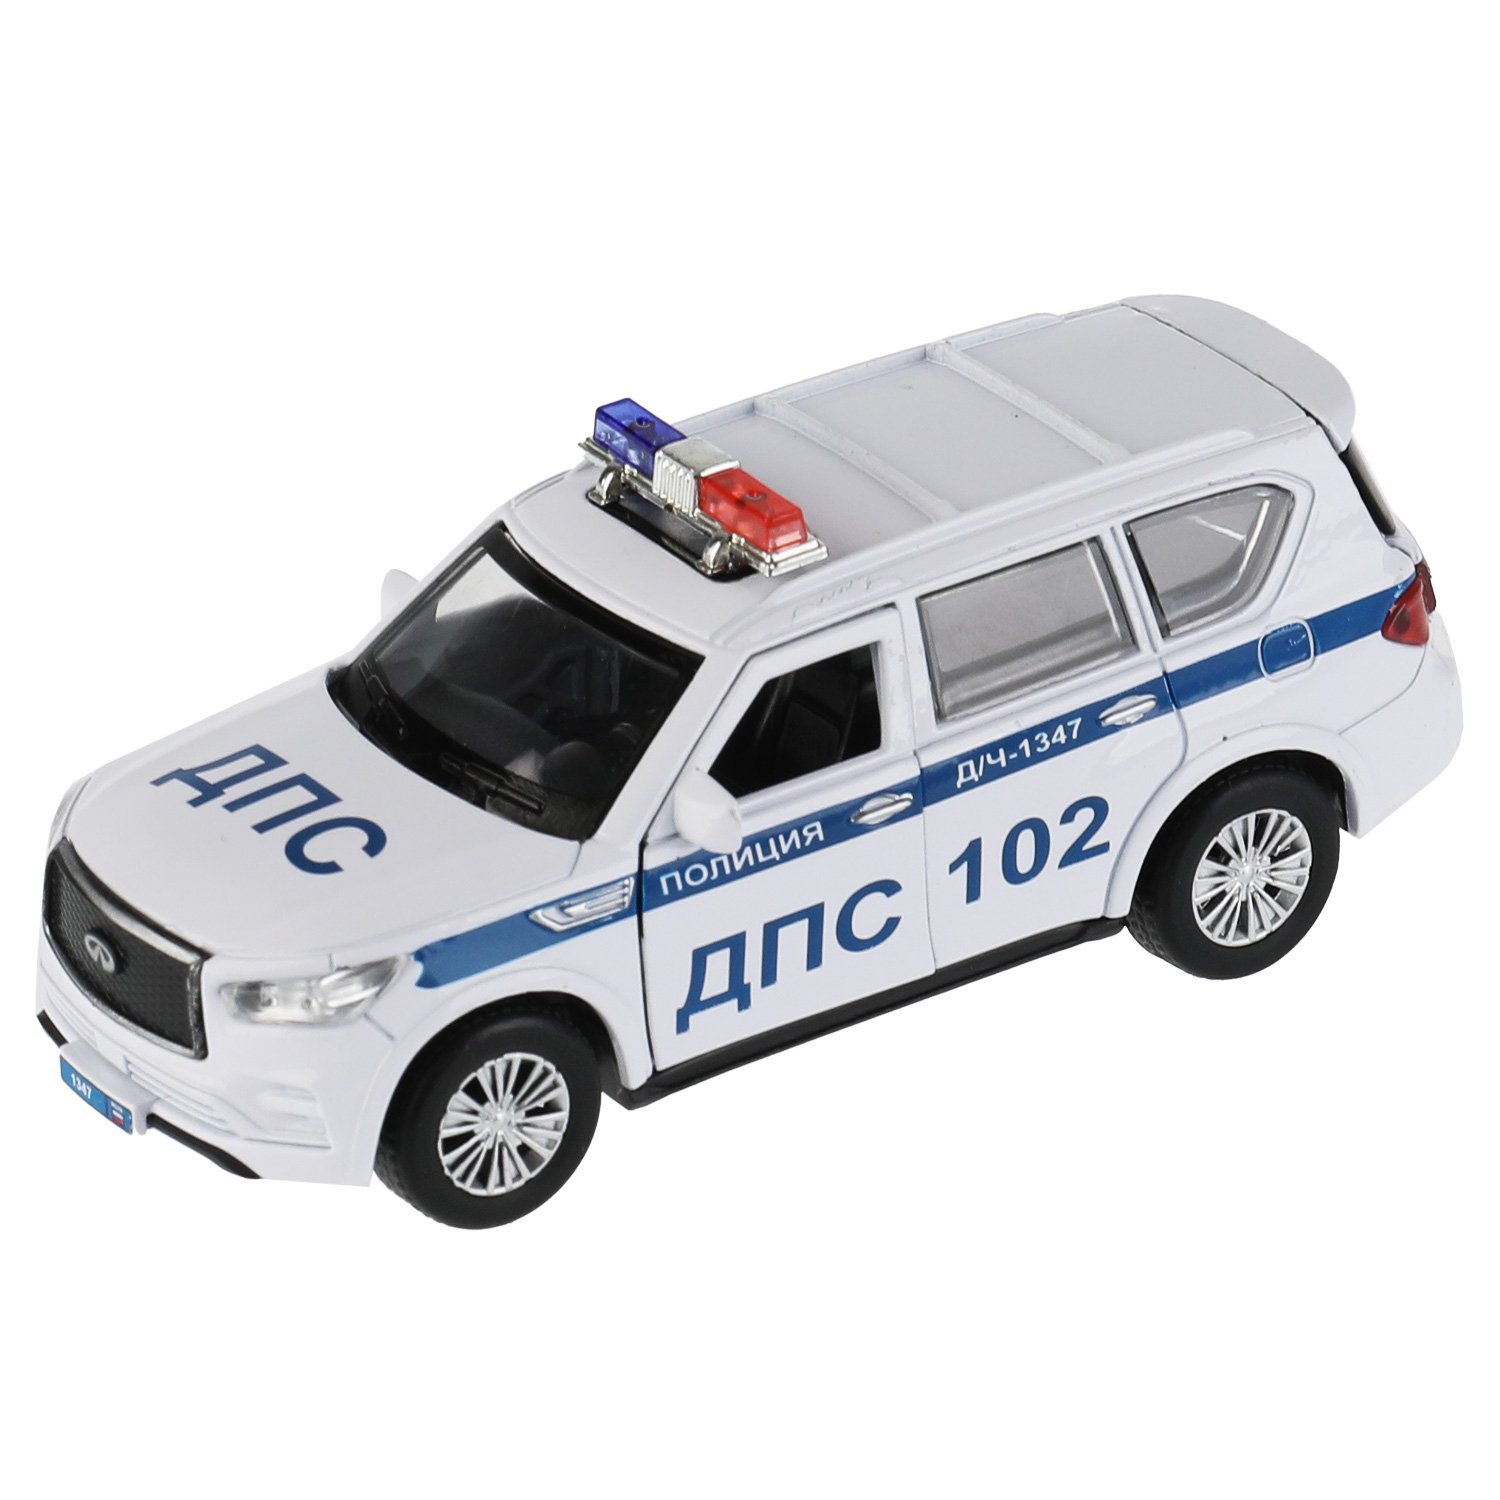 Машина металл Infiniti Qx80 Полиция, 12,5 см, (откр двери, баг, белый) инер, в коробке машина металл infiniti qx80 12 5 см откр двери баг белый инер в коробке